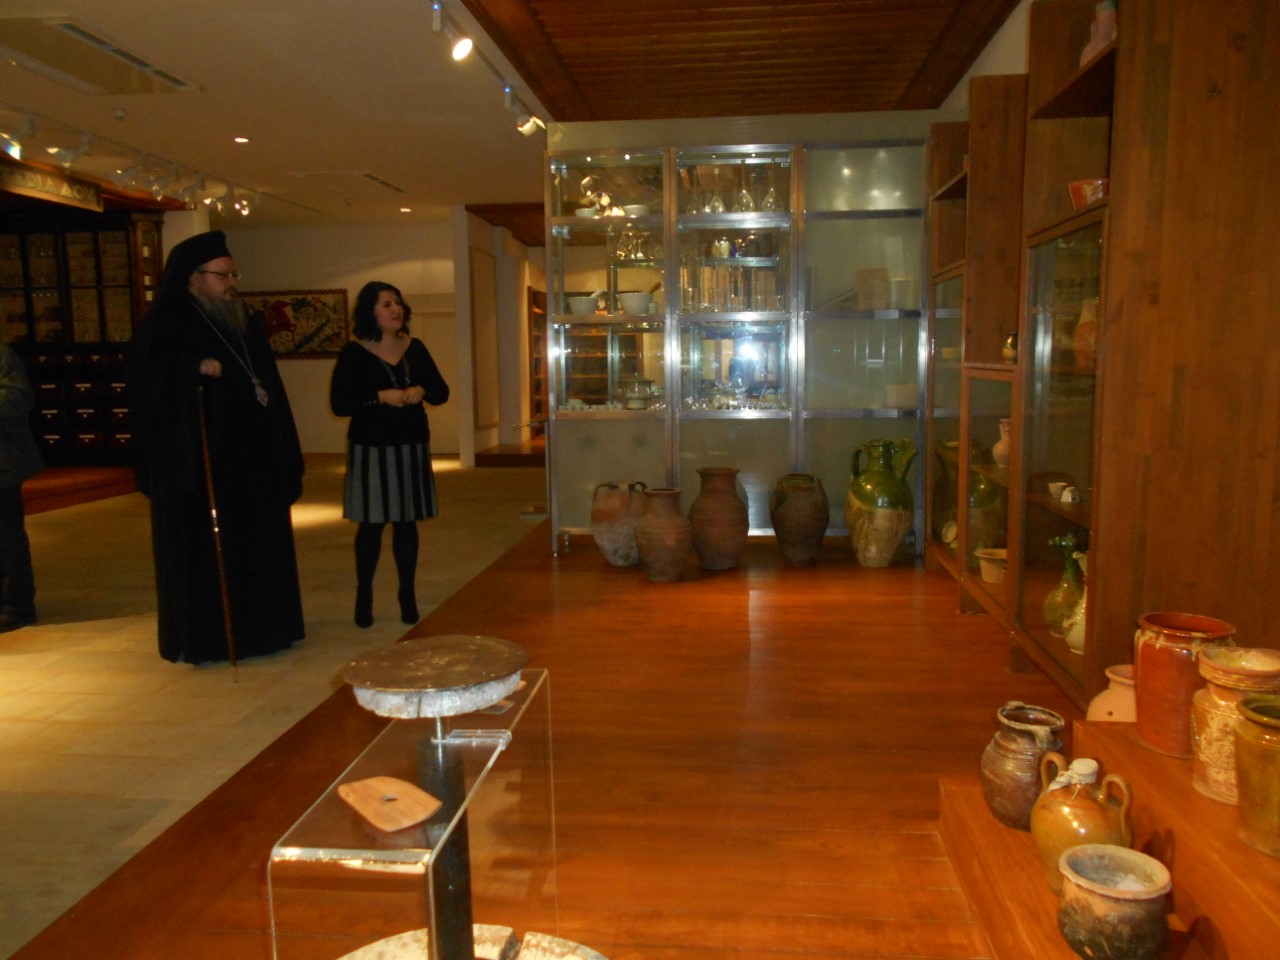 Eπίσκεψη Ιερώνυμου στο Λαογραφικό Μουσείο Λάρισας 